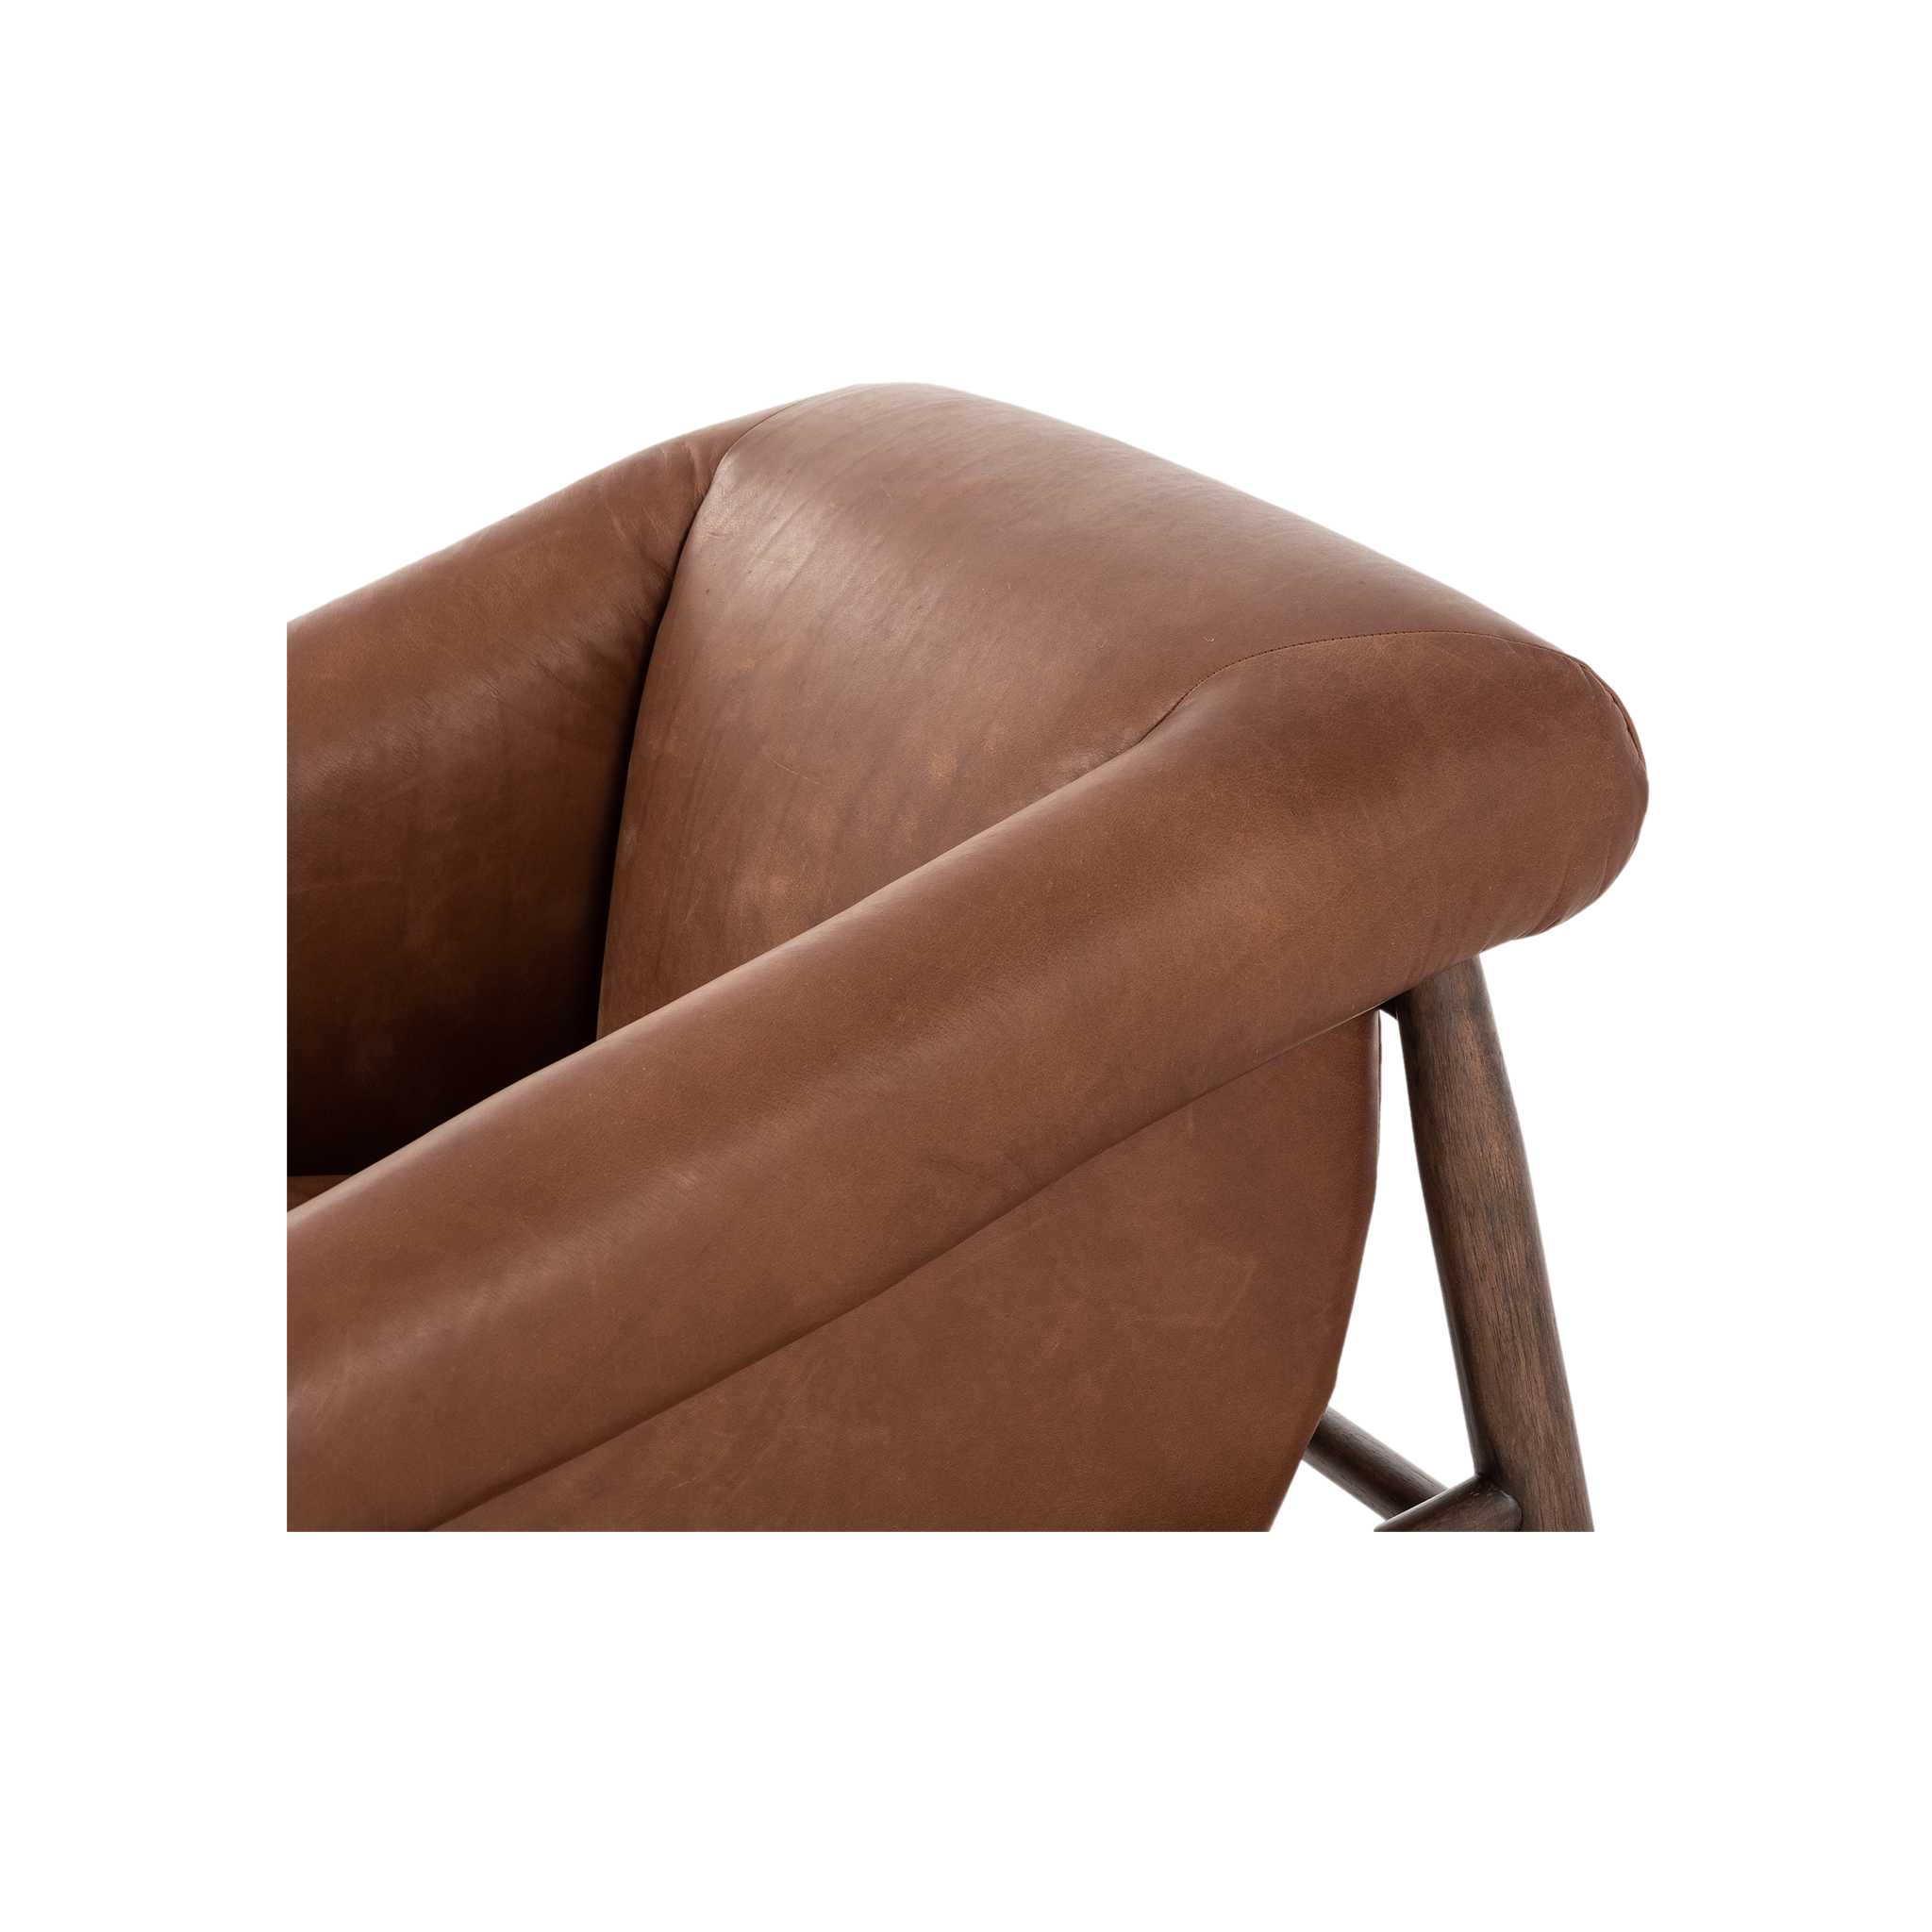 Reggie Chair in Sienna